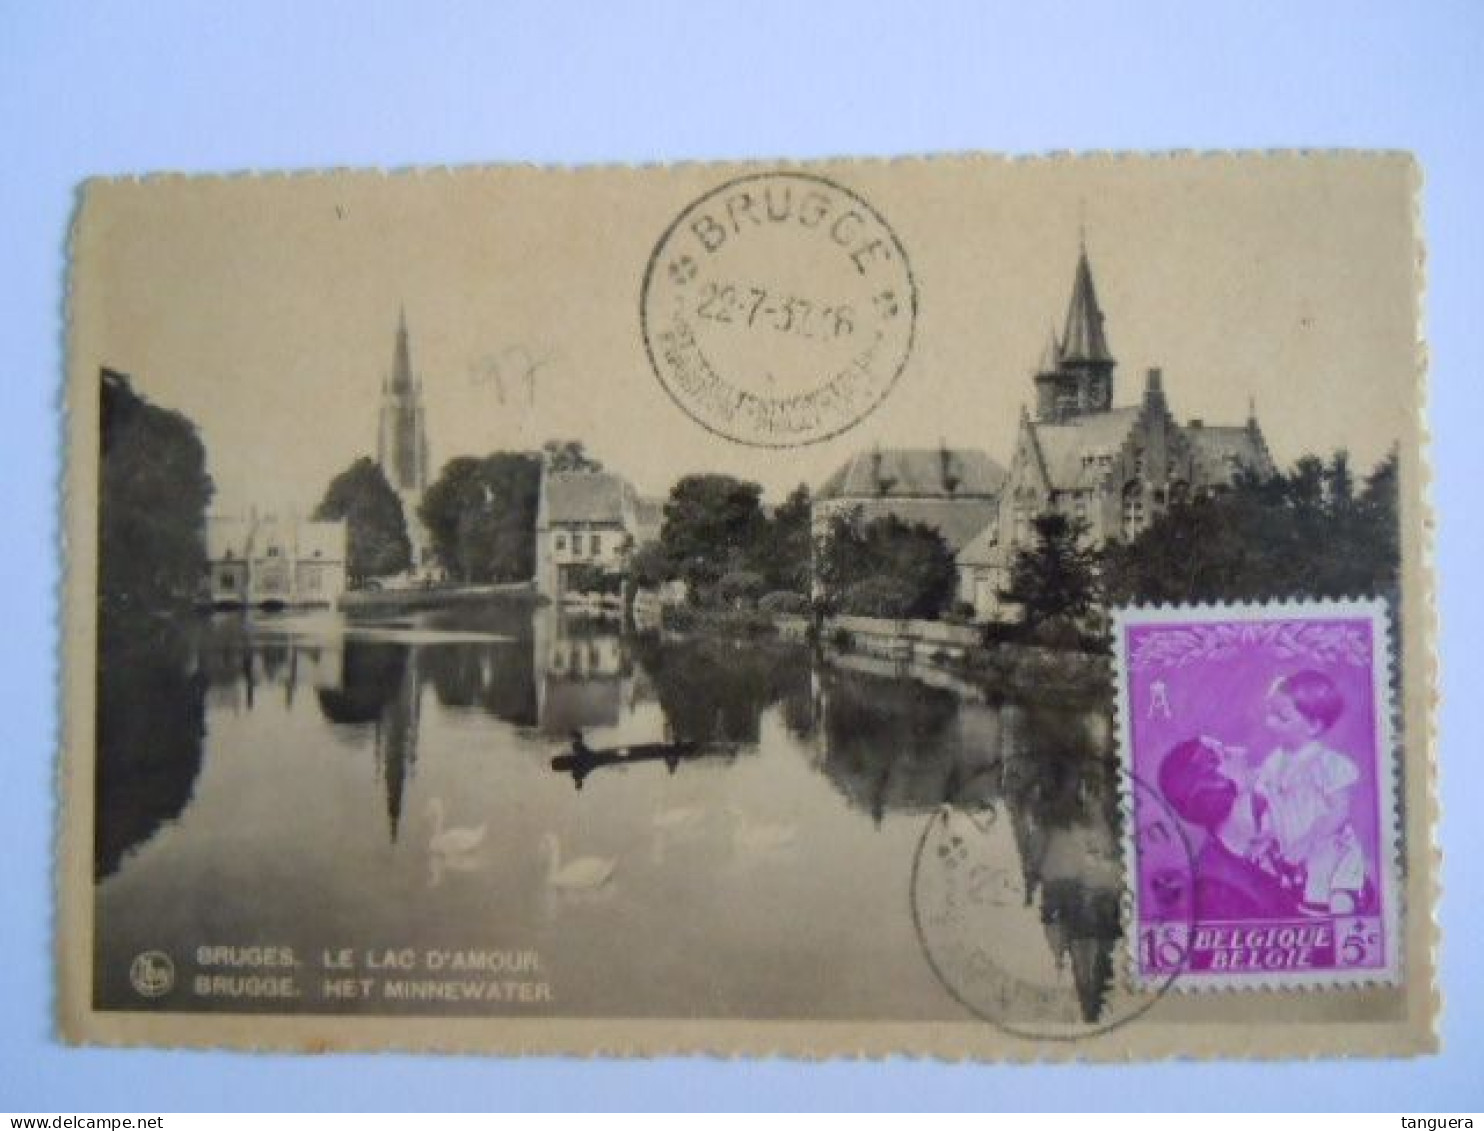 Belgie Reine Koningin Astrid 1937 Cob 447 Op Sur Cp Brugge Le Lac D'amour Het Minnewater (703) - Brieven En Documenten